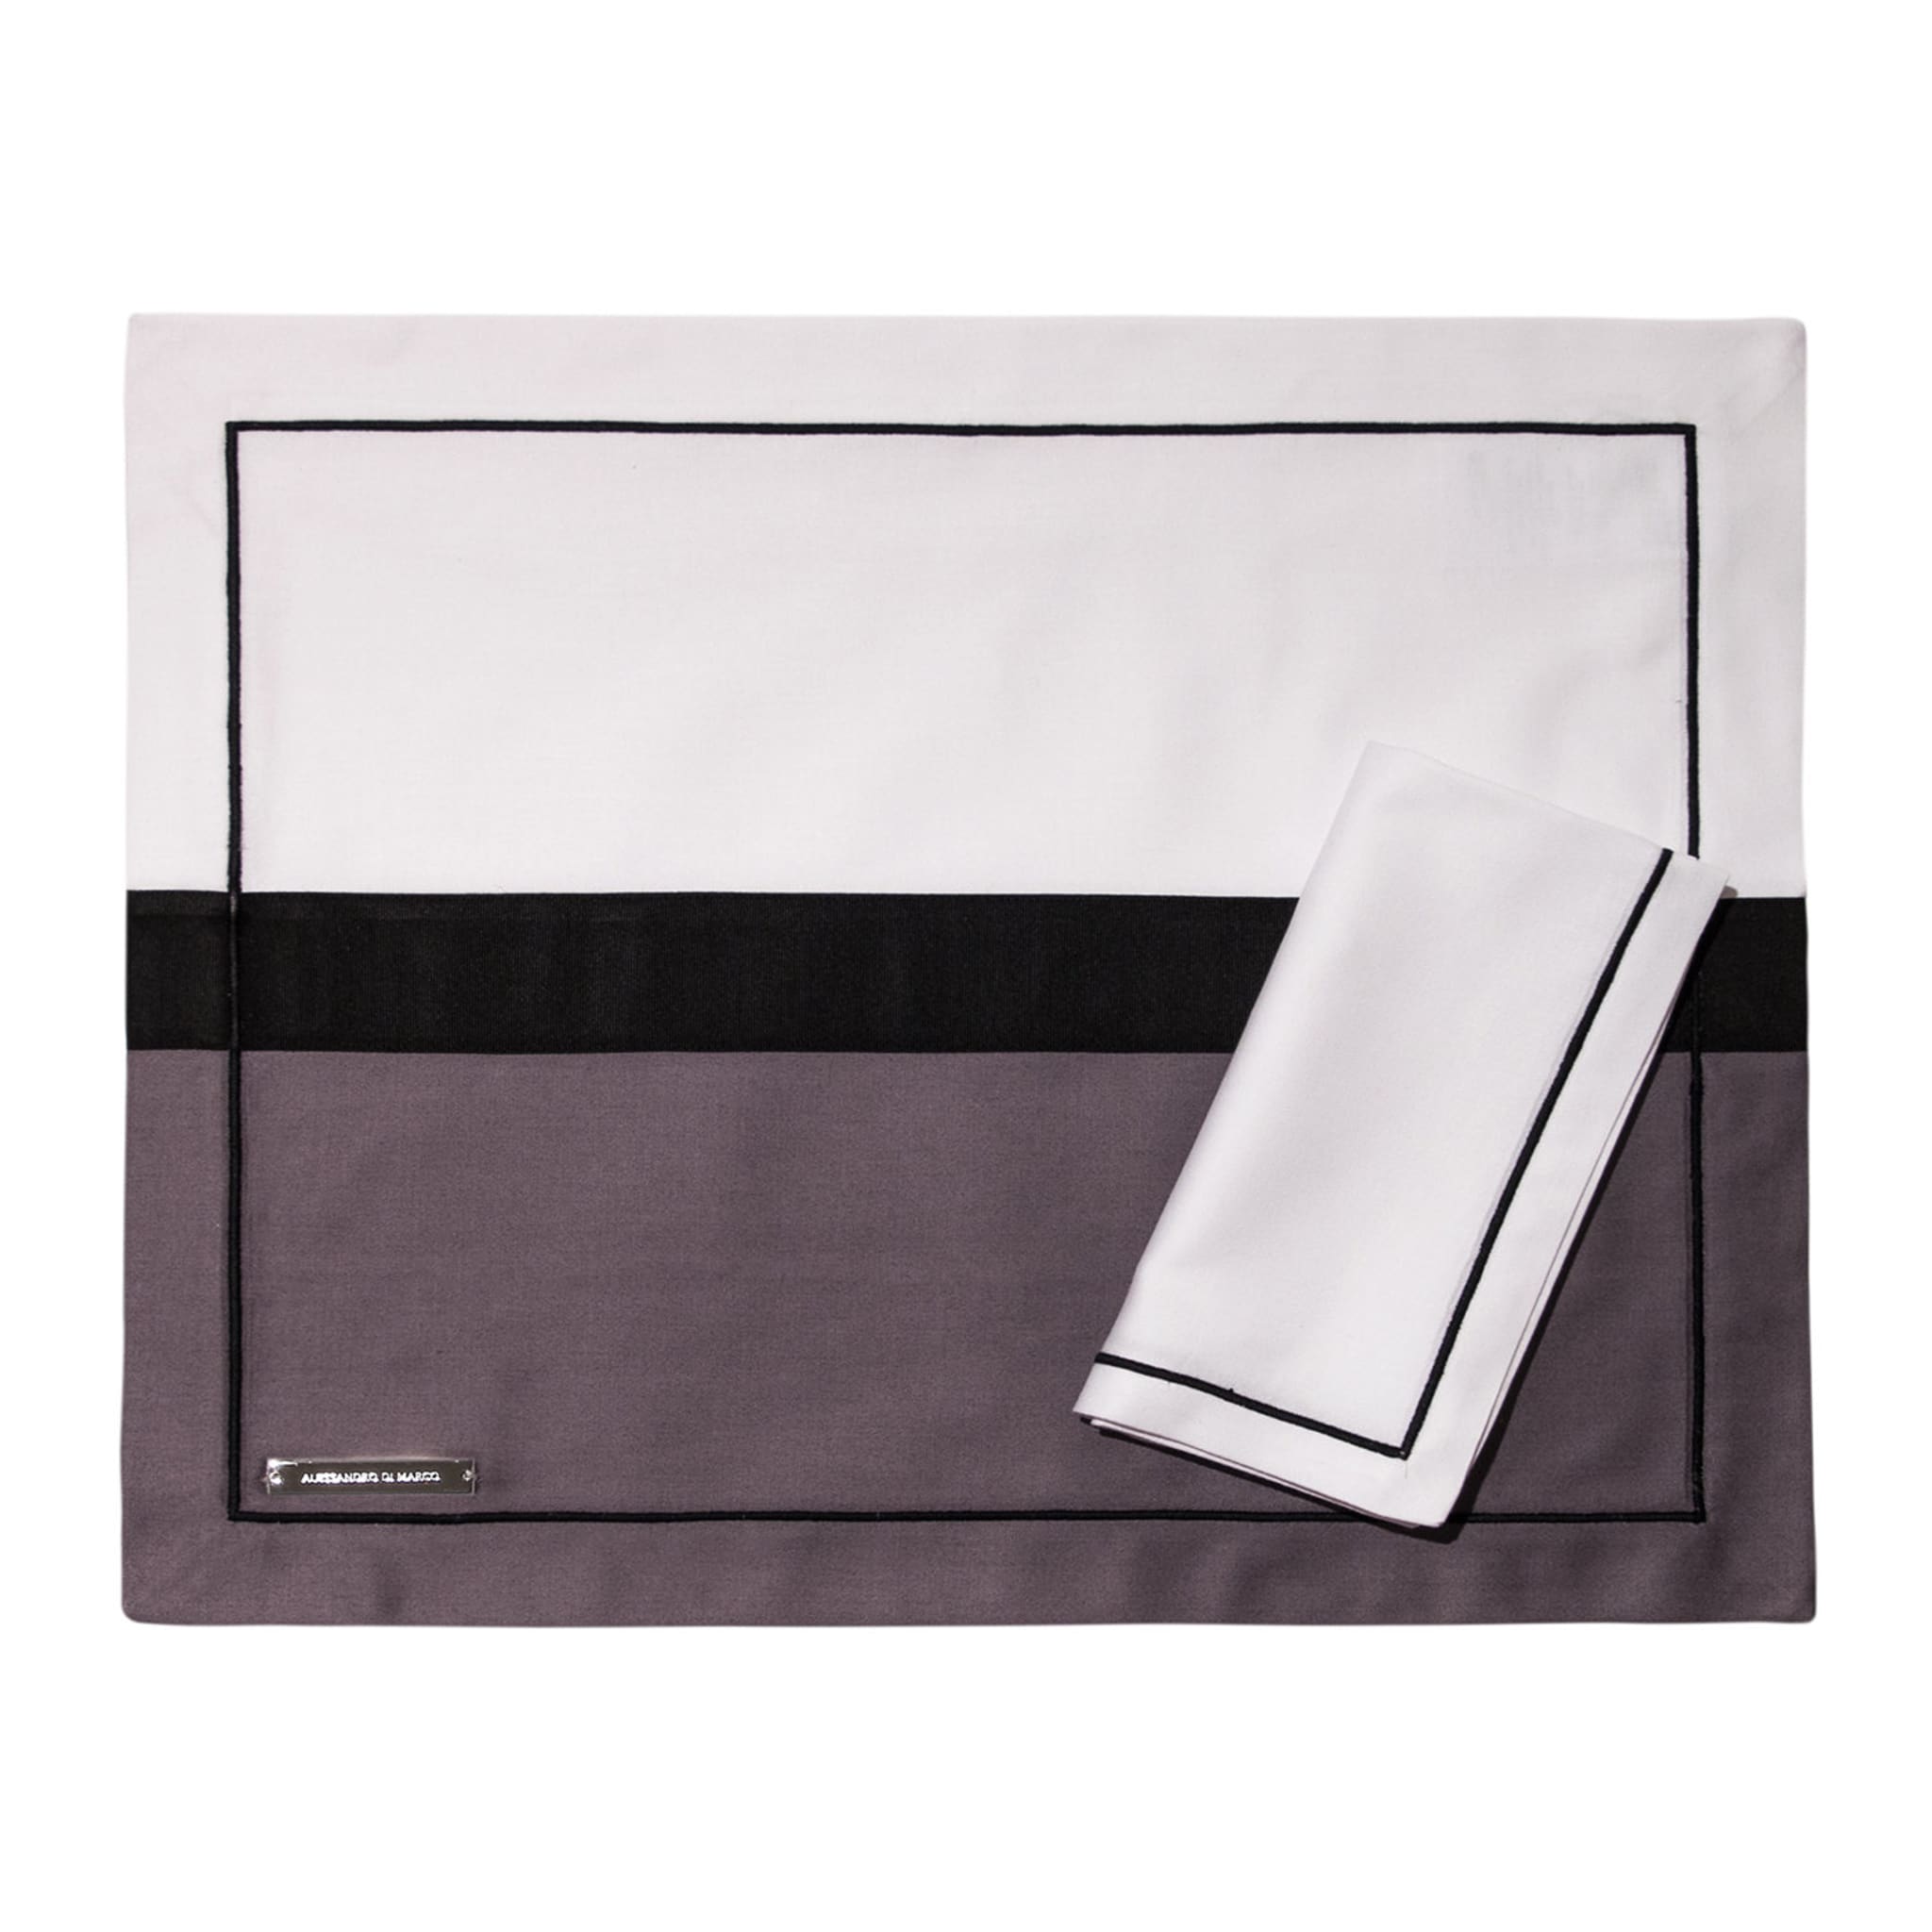 Tovagliette e tovaglioli - Due tonalità di grigio e bianco - Vista alternativa 1